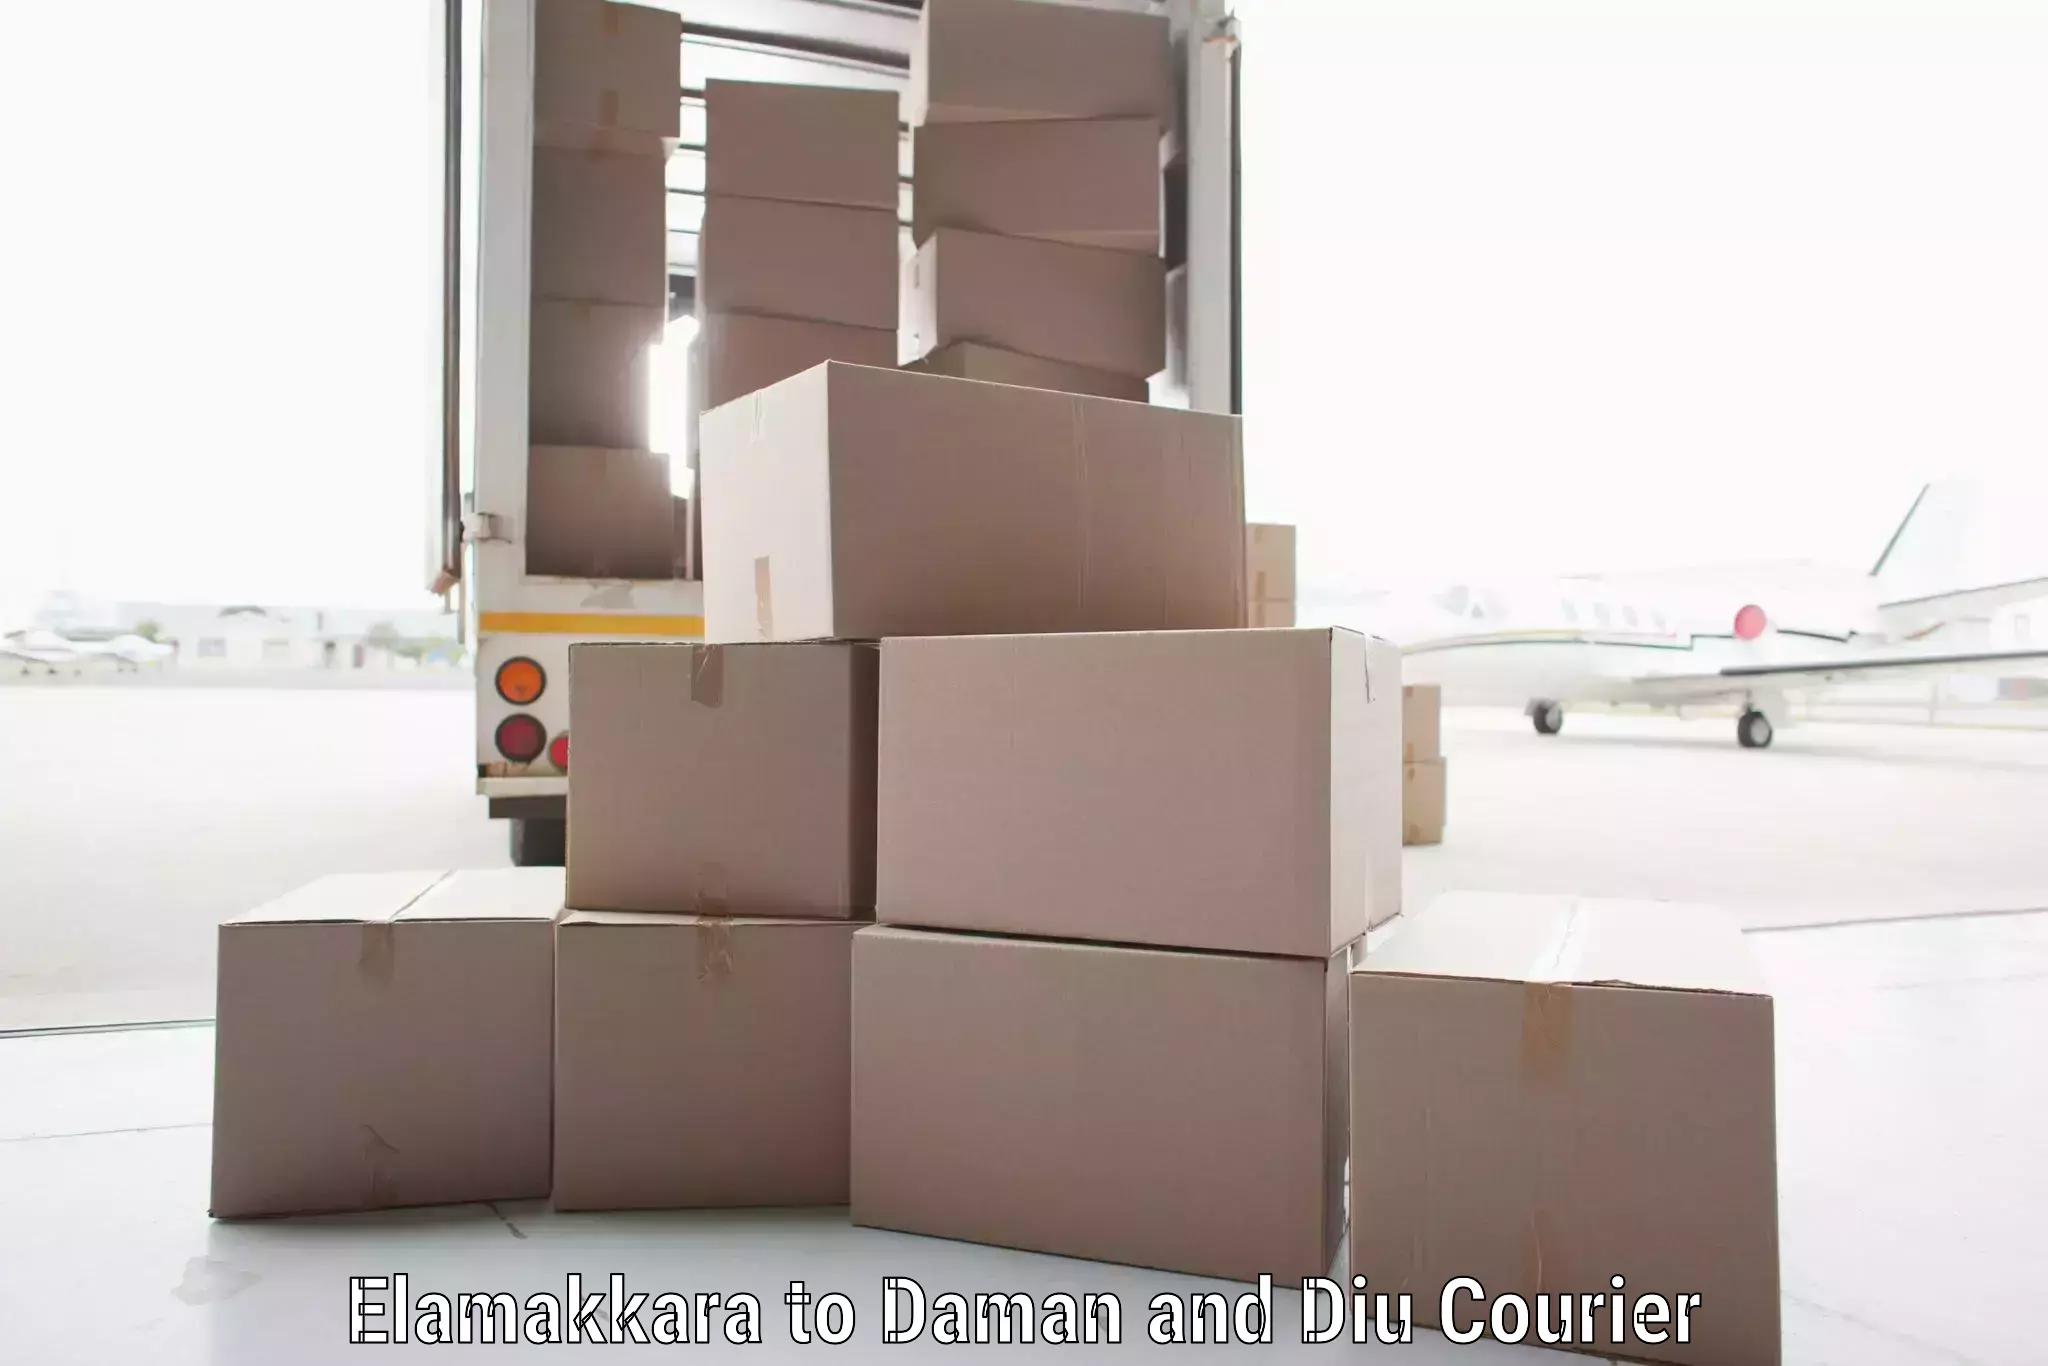 Individual parcel service Elamakkara to Daman and Diu